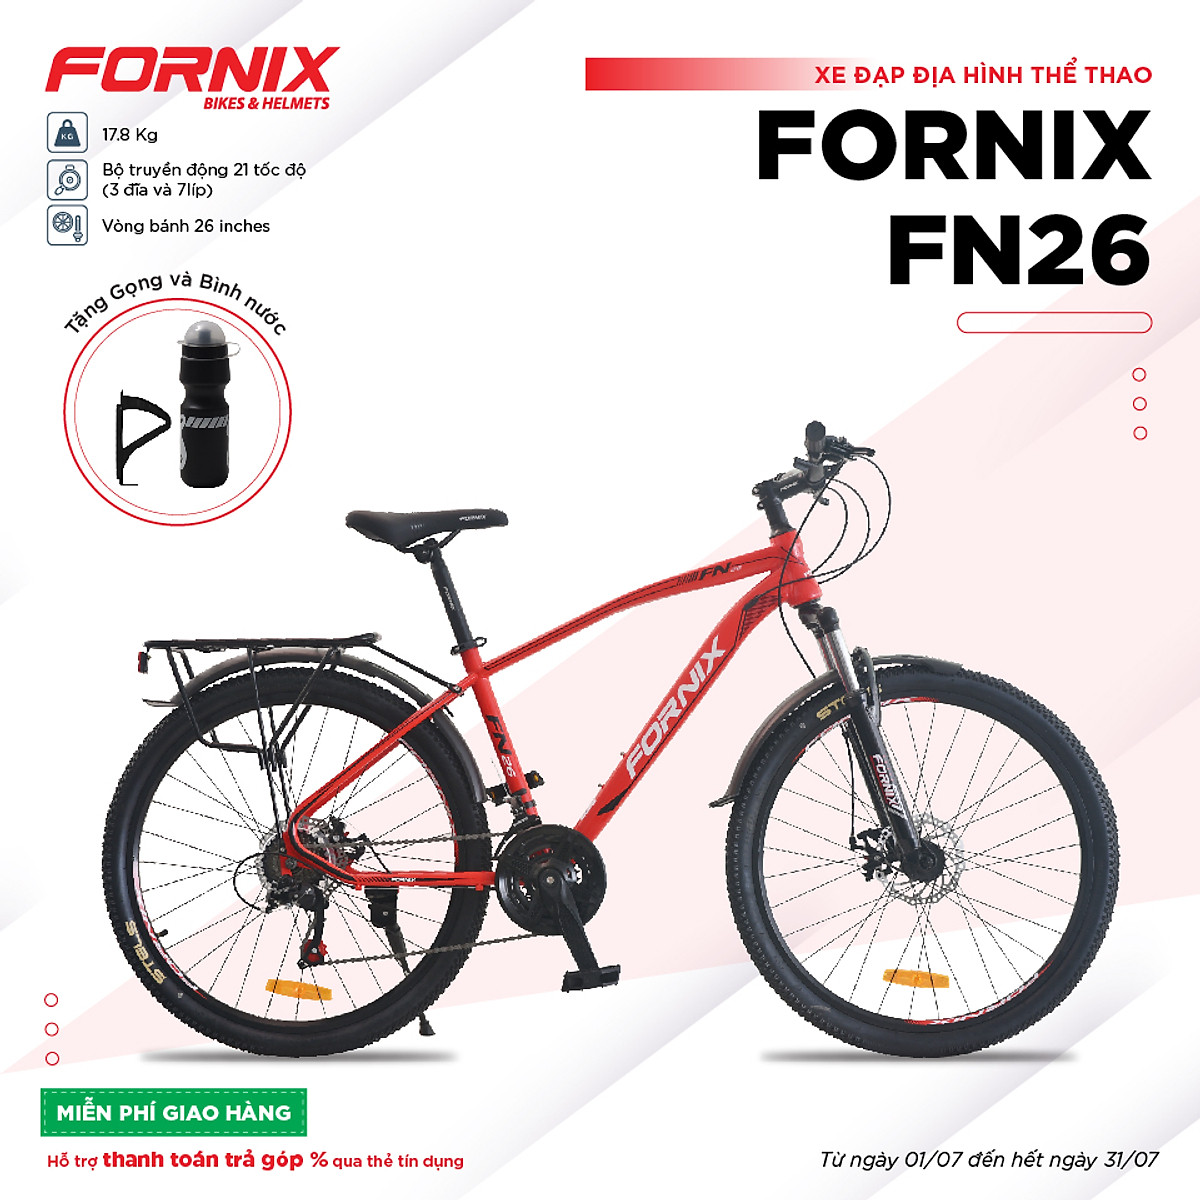 XE ĐẠP ĐỊA HÌNH FORNIX FN26